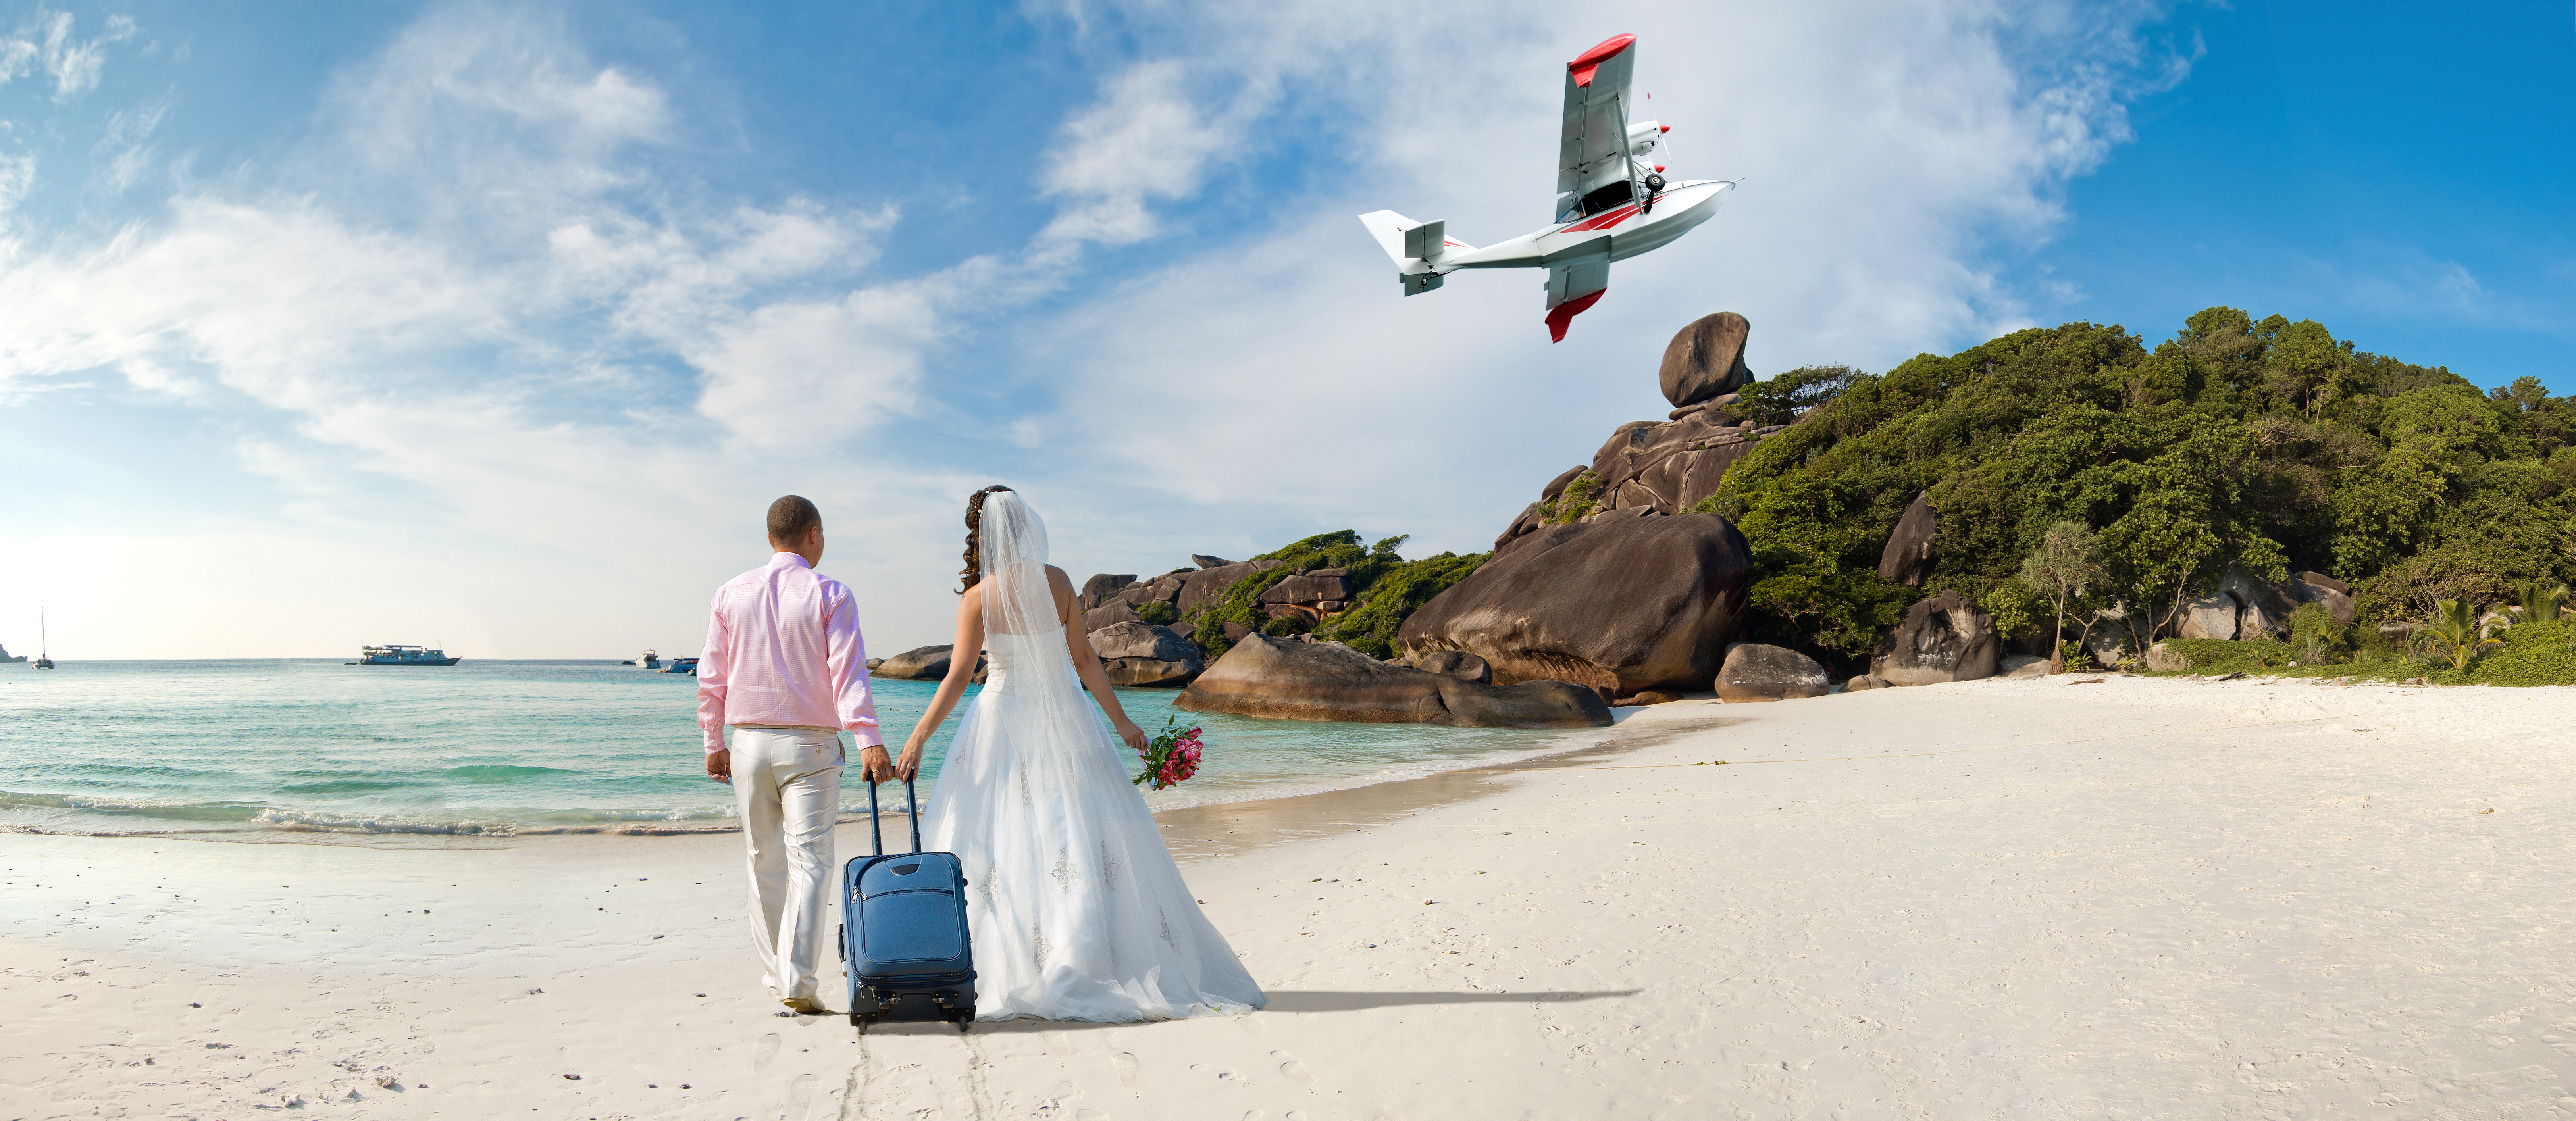 Podróż poślubna - jakie miejsce wybrać?